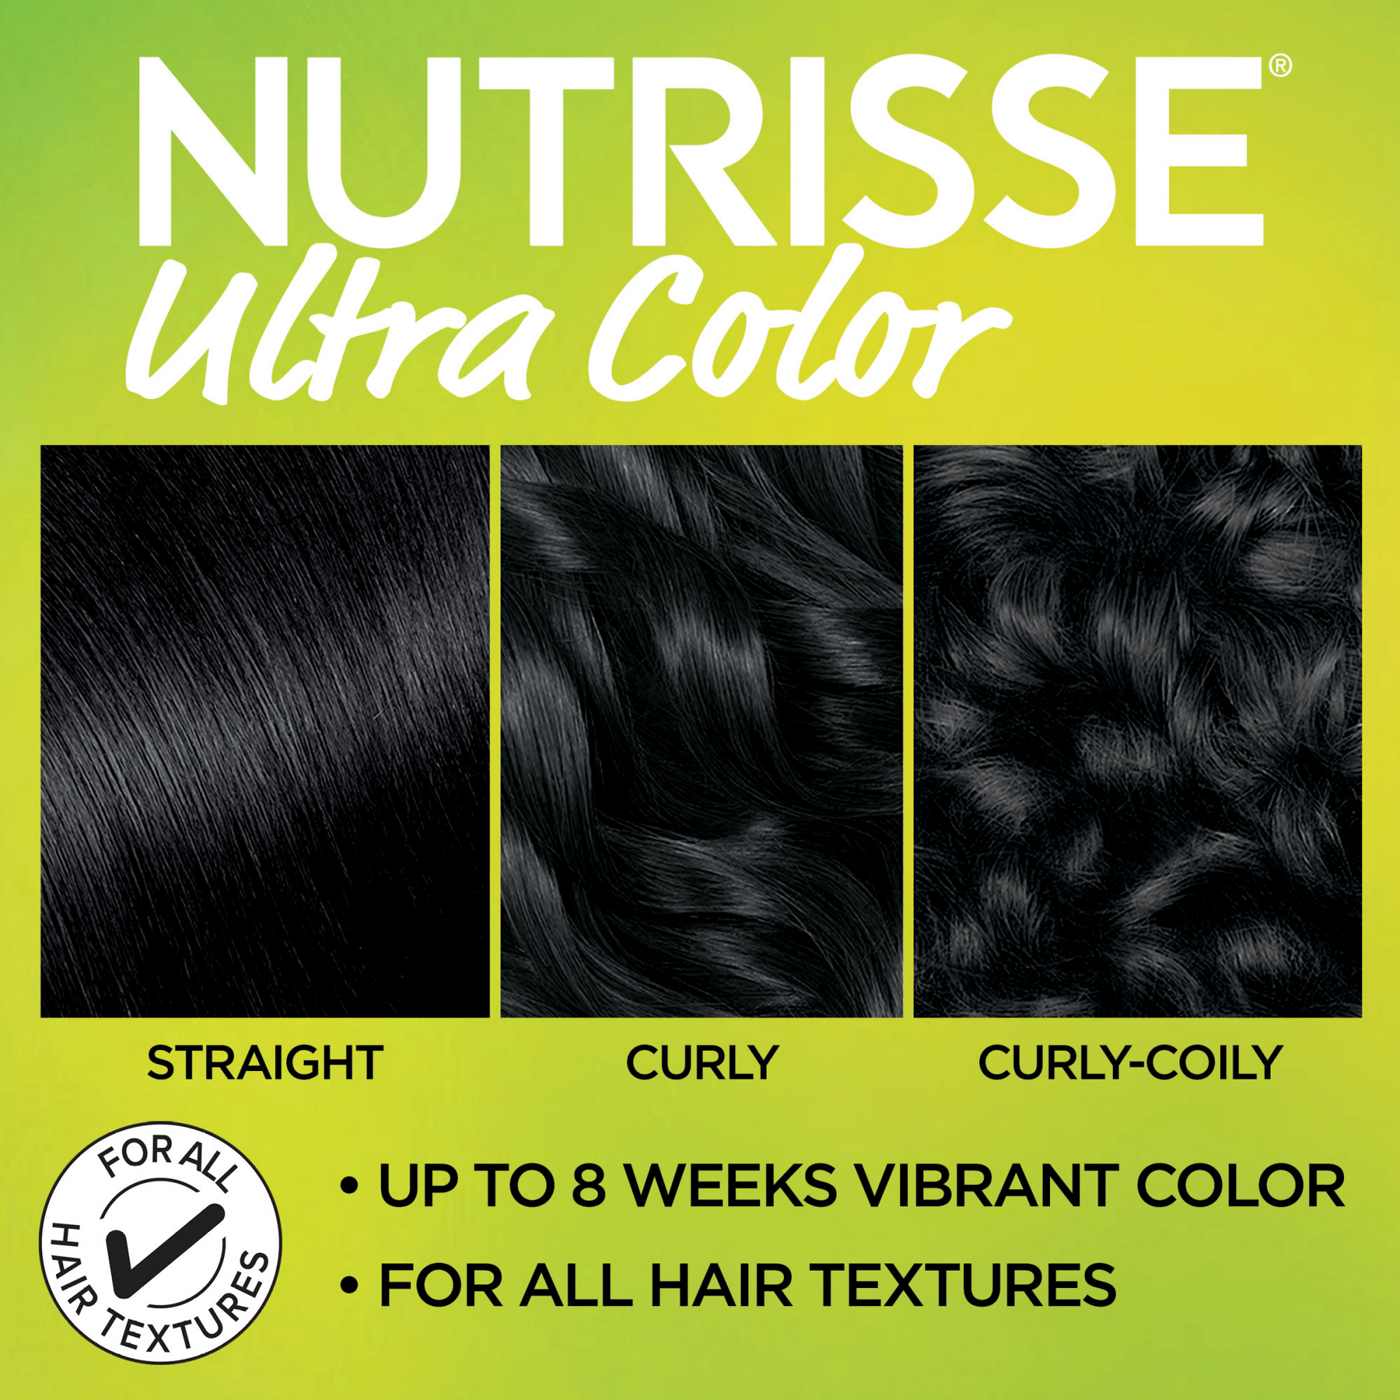 Garnier Nutrisse Ultra Color Nourishing Bold Permanent Hair Color Creme BL11 Jet Blue Black; image 4 of 6